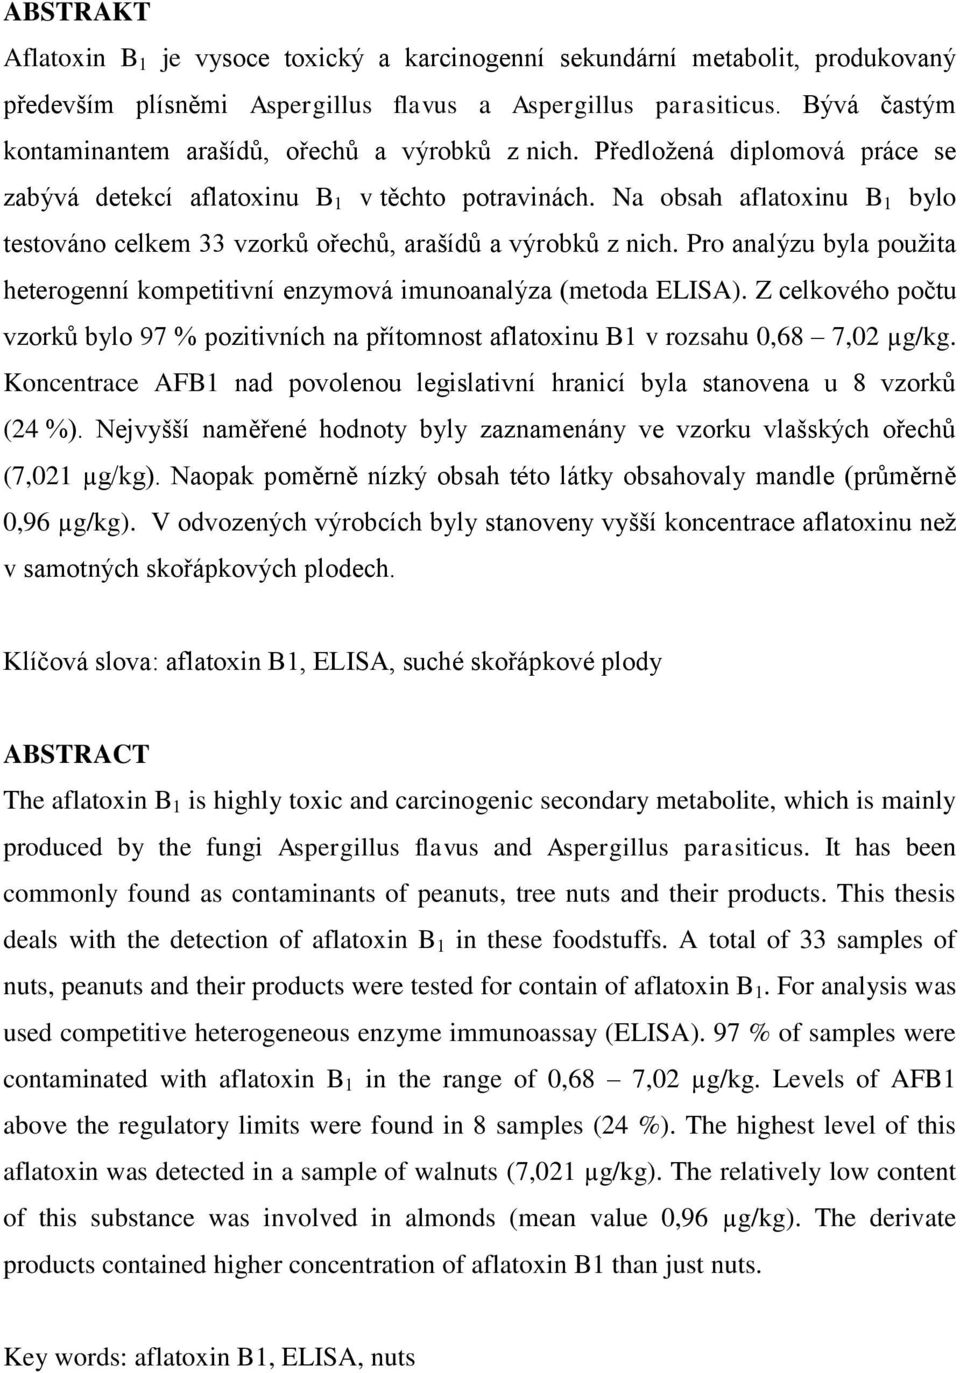 Na obsah aflatoxinu B 1 bylo testováno celkem 33 vzorků ořechů, arašídů a výrobků z nich. Pro analýzu byla pouţita heterogenní kompetitivní enzymová imunoanalýza (metoda ELISA).